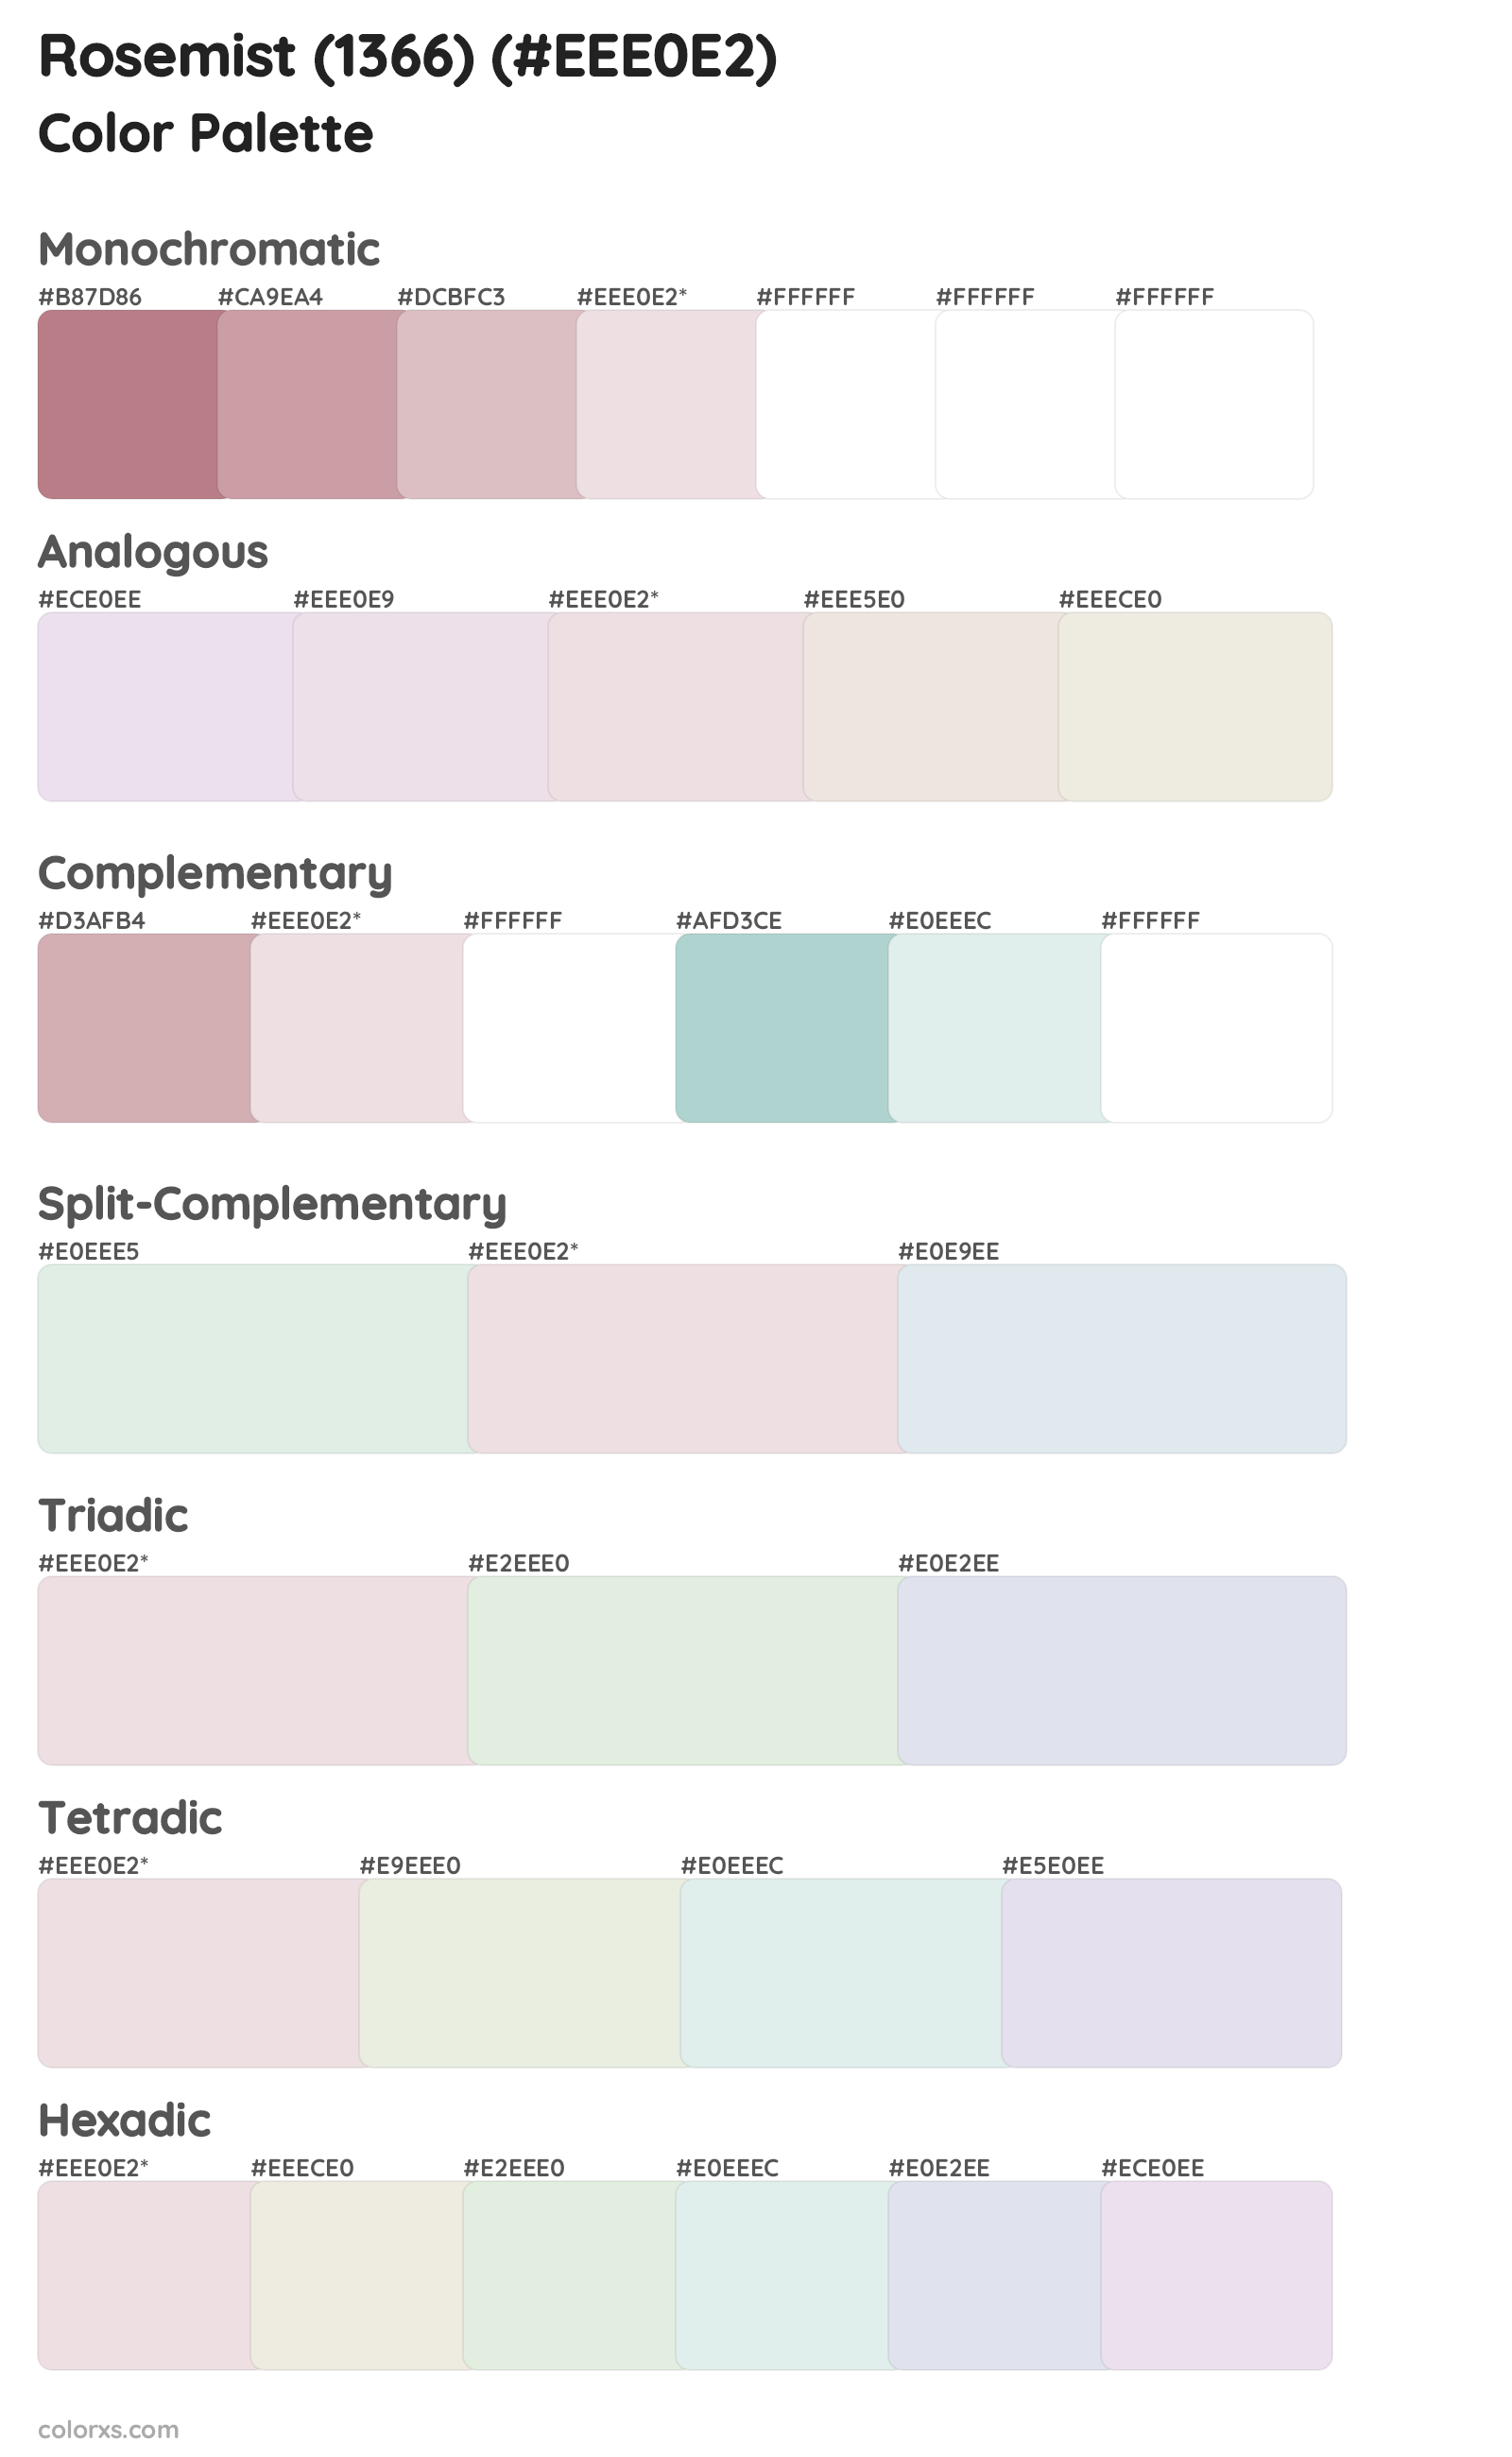 Rosemist (1366) Color Scheme Palettes